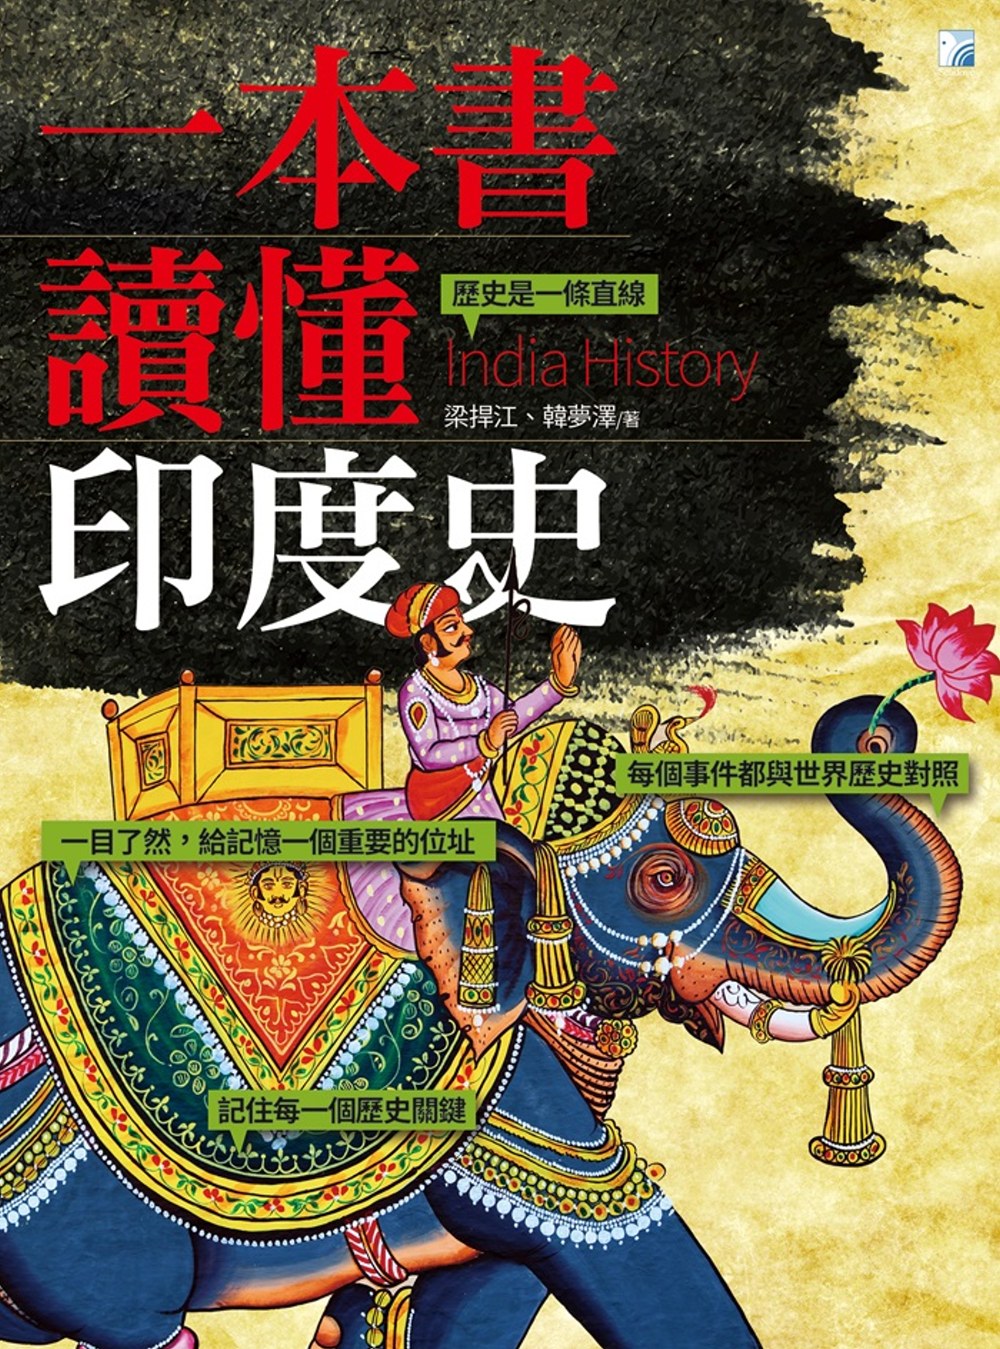 一本書讀懂印度史